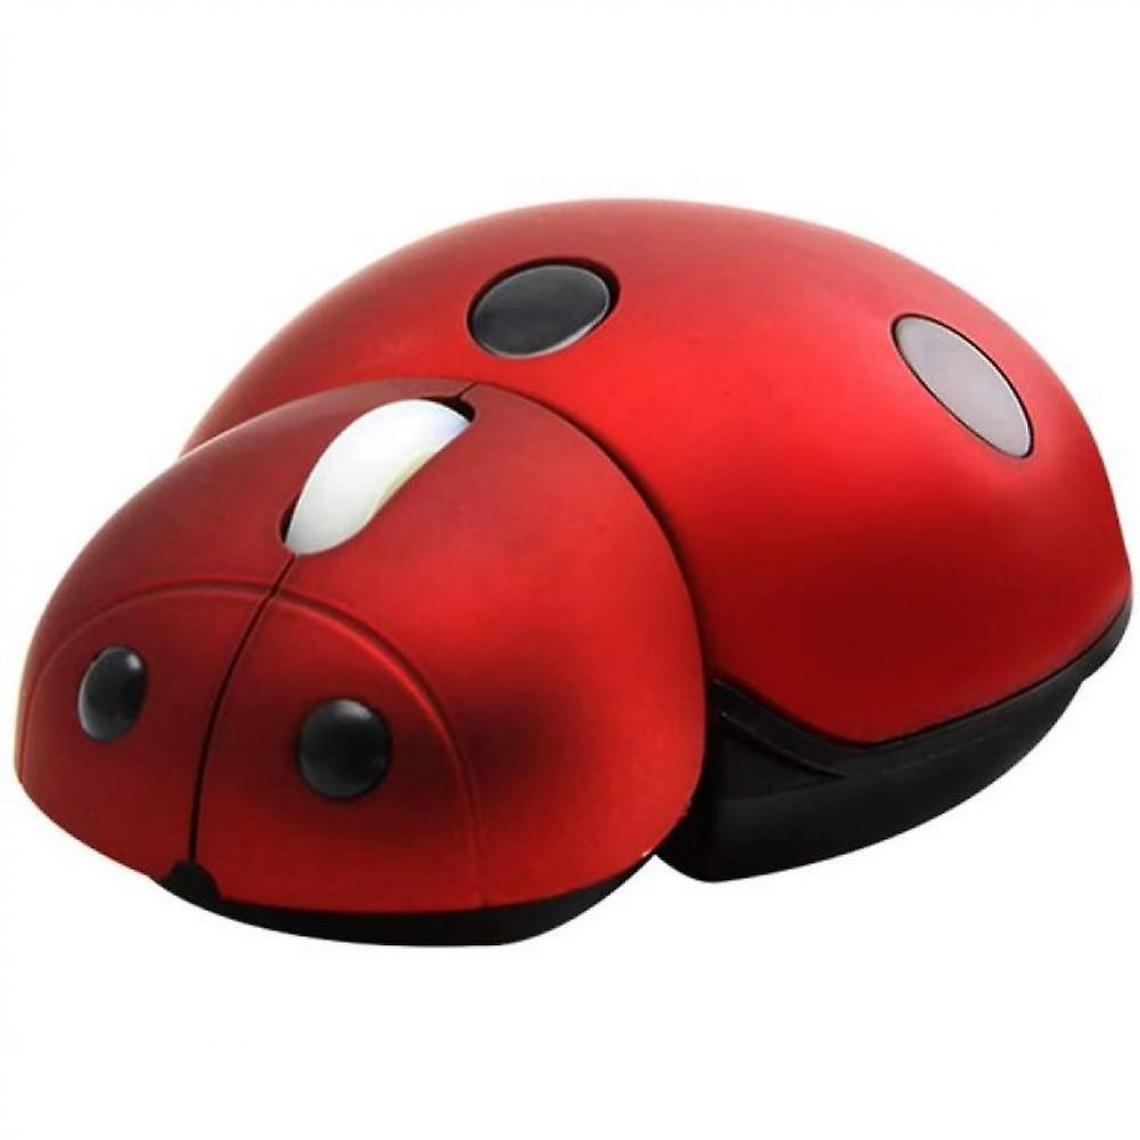 Universal - Souris sans fil 2.4G Petit chien mignon en forme de coccinelle 3000dpi Portable Mobile Optical Mouse (rouge) - Souris